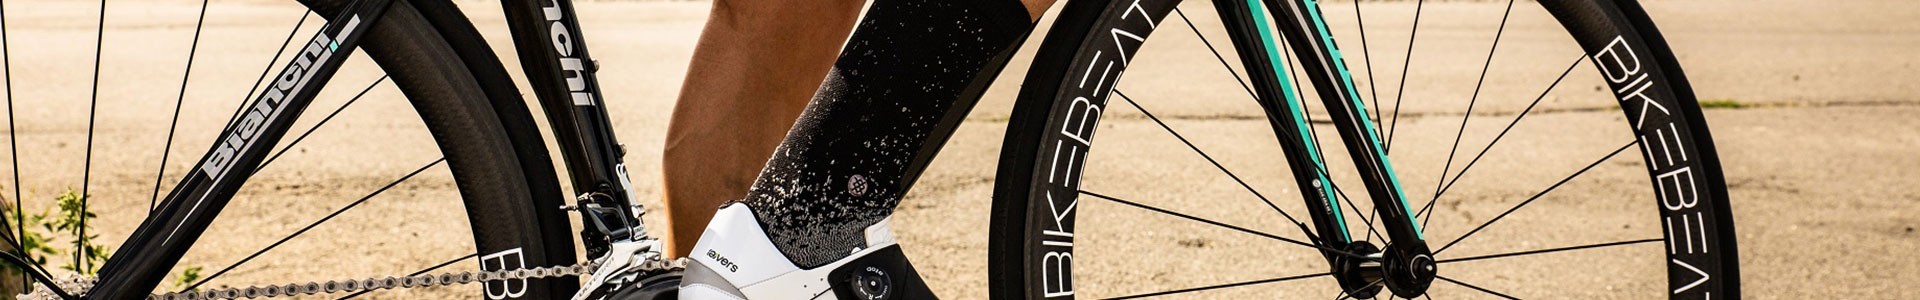 Rennrad-Teile und Komponenten kaufen | Bikespell.com